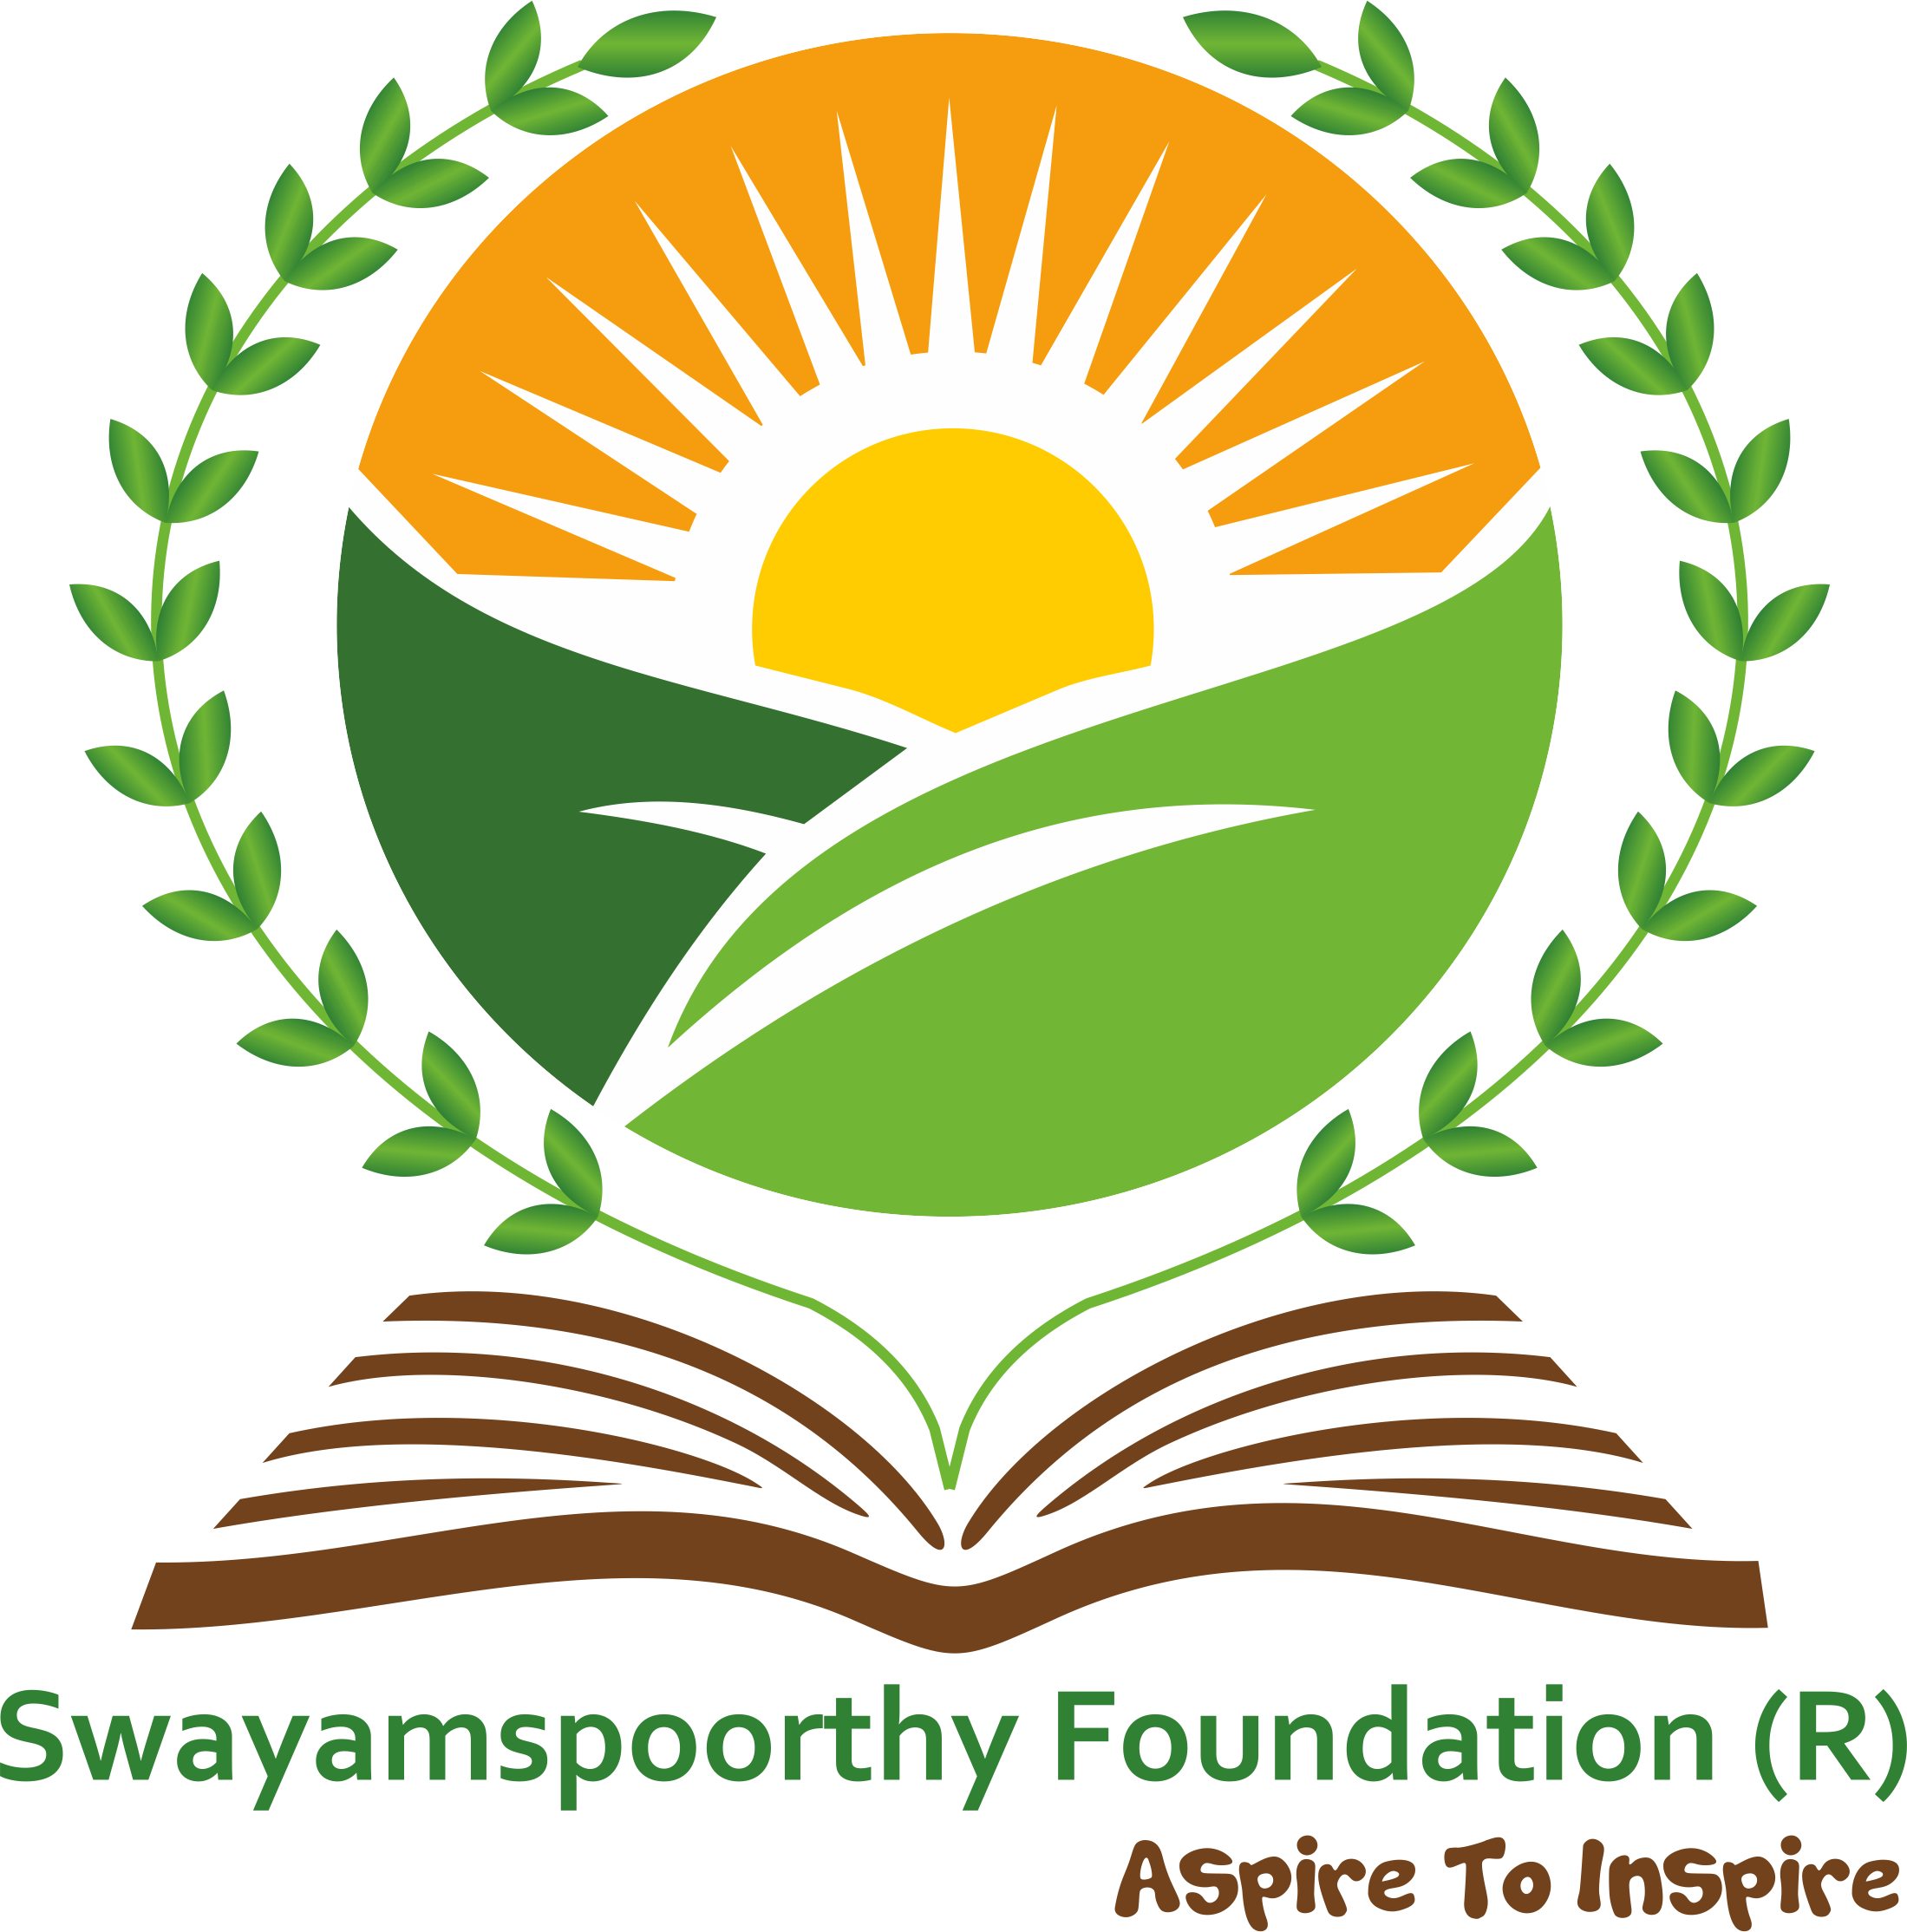 Swayam Spoorthy Foundation